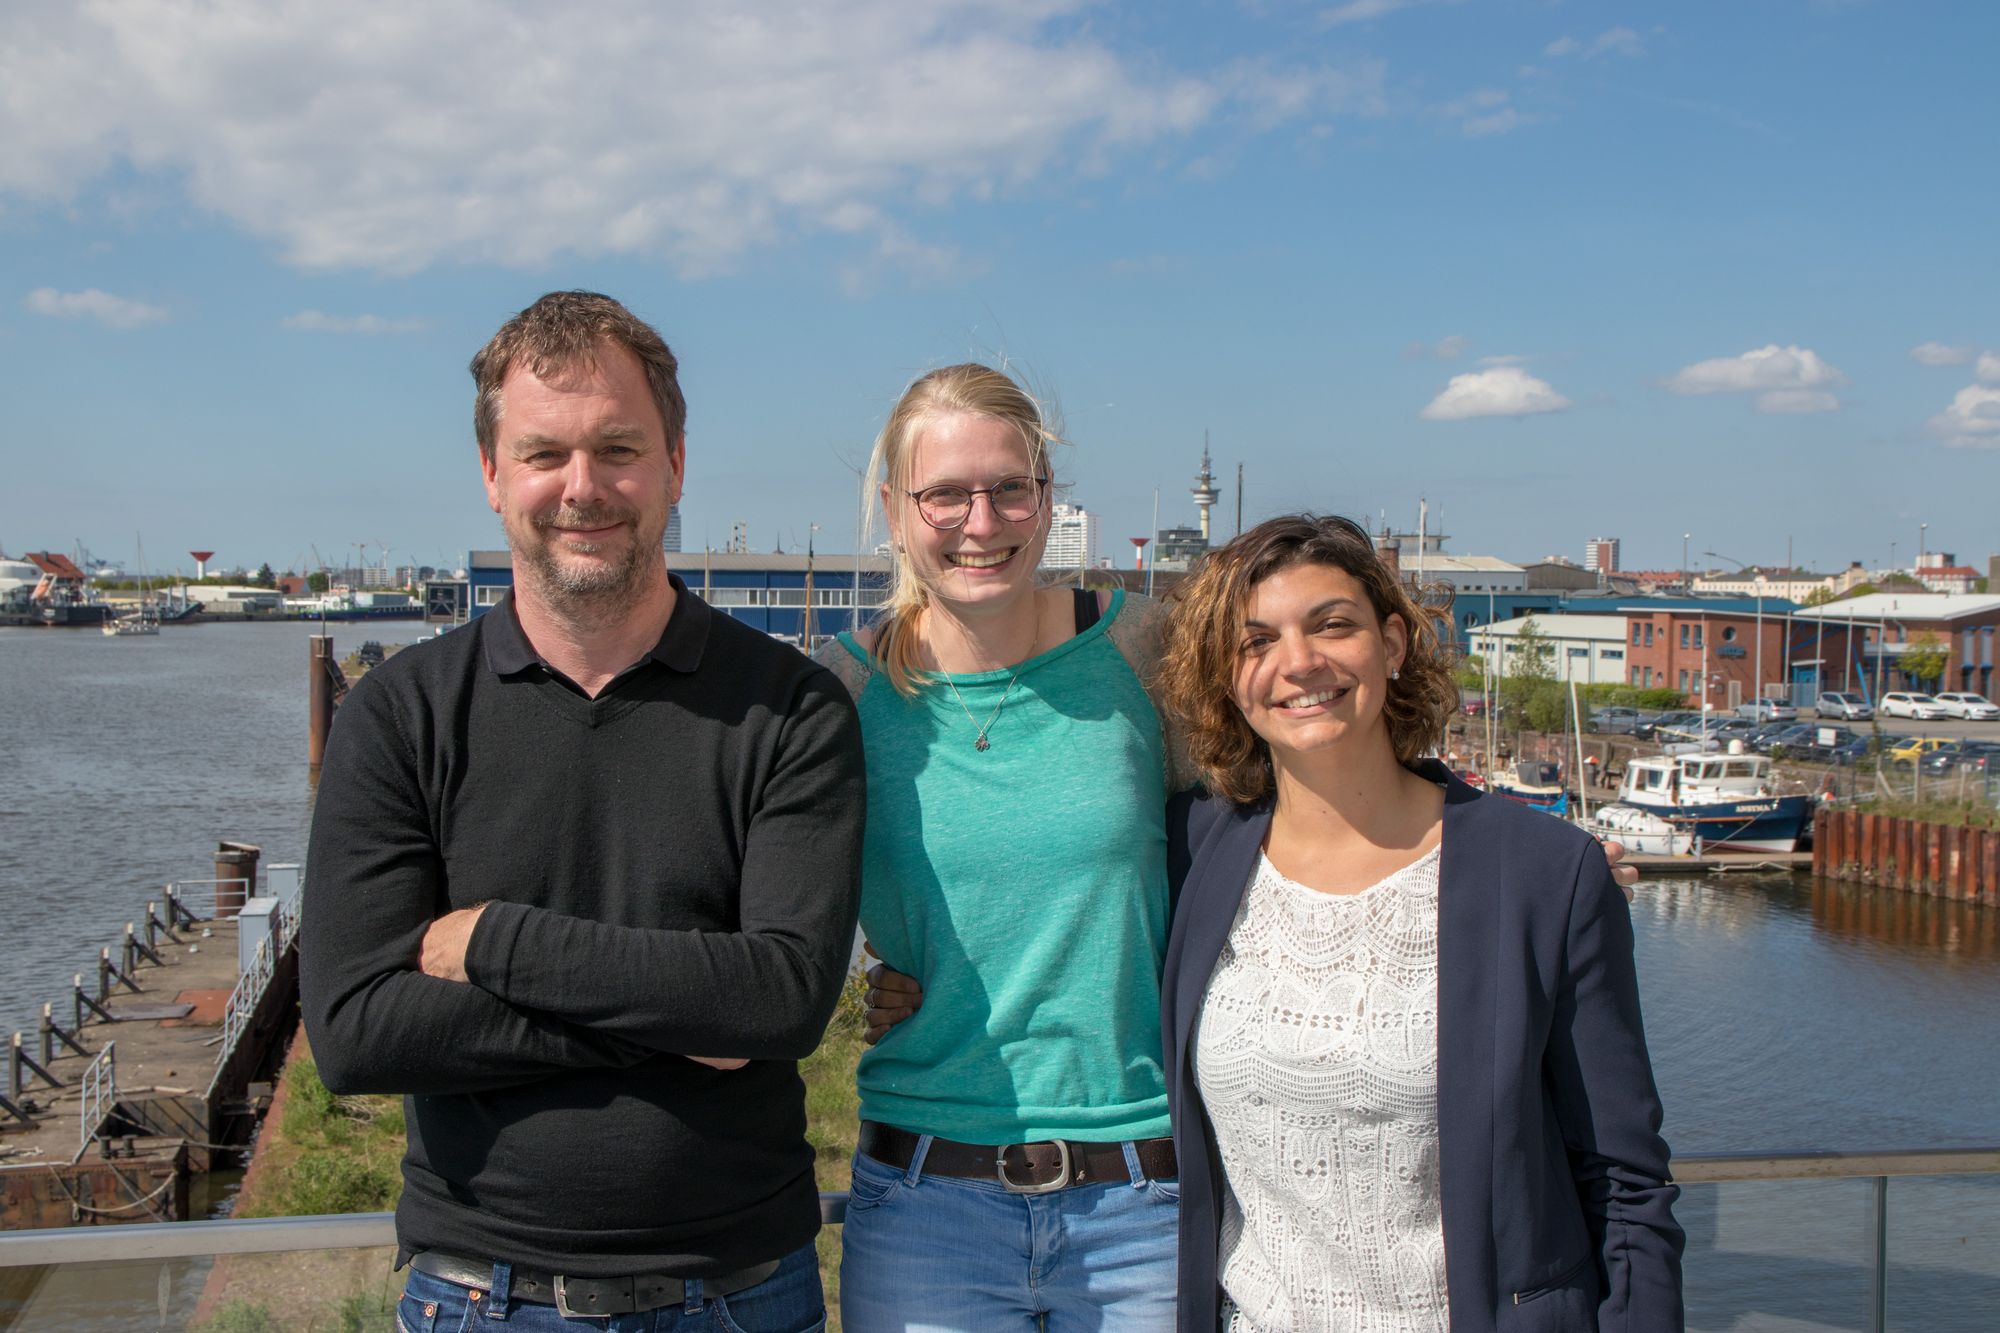 Leiter und zwei Mitarbeiterinnen des Arbeitspakets 1 vor dem Bremerhavener Hafen